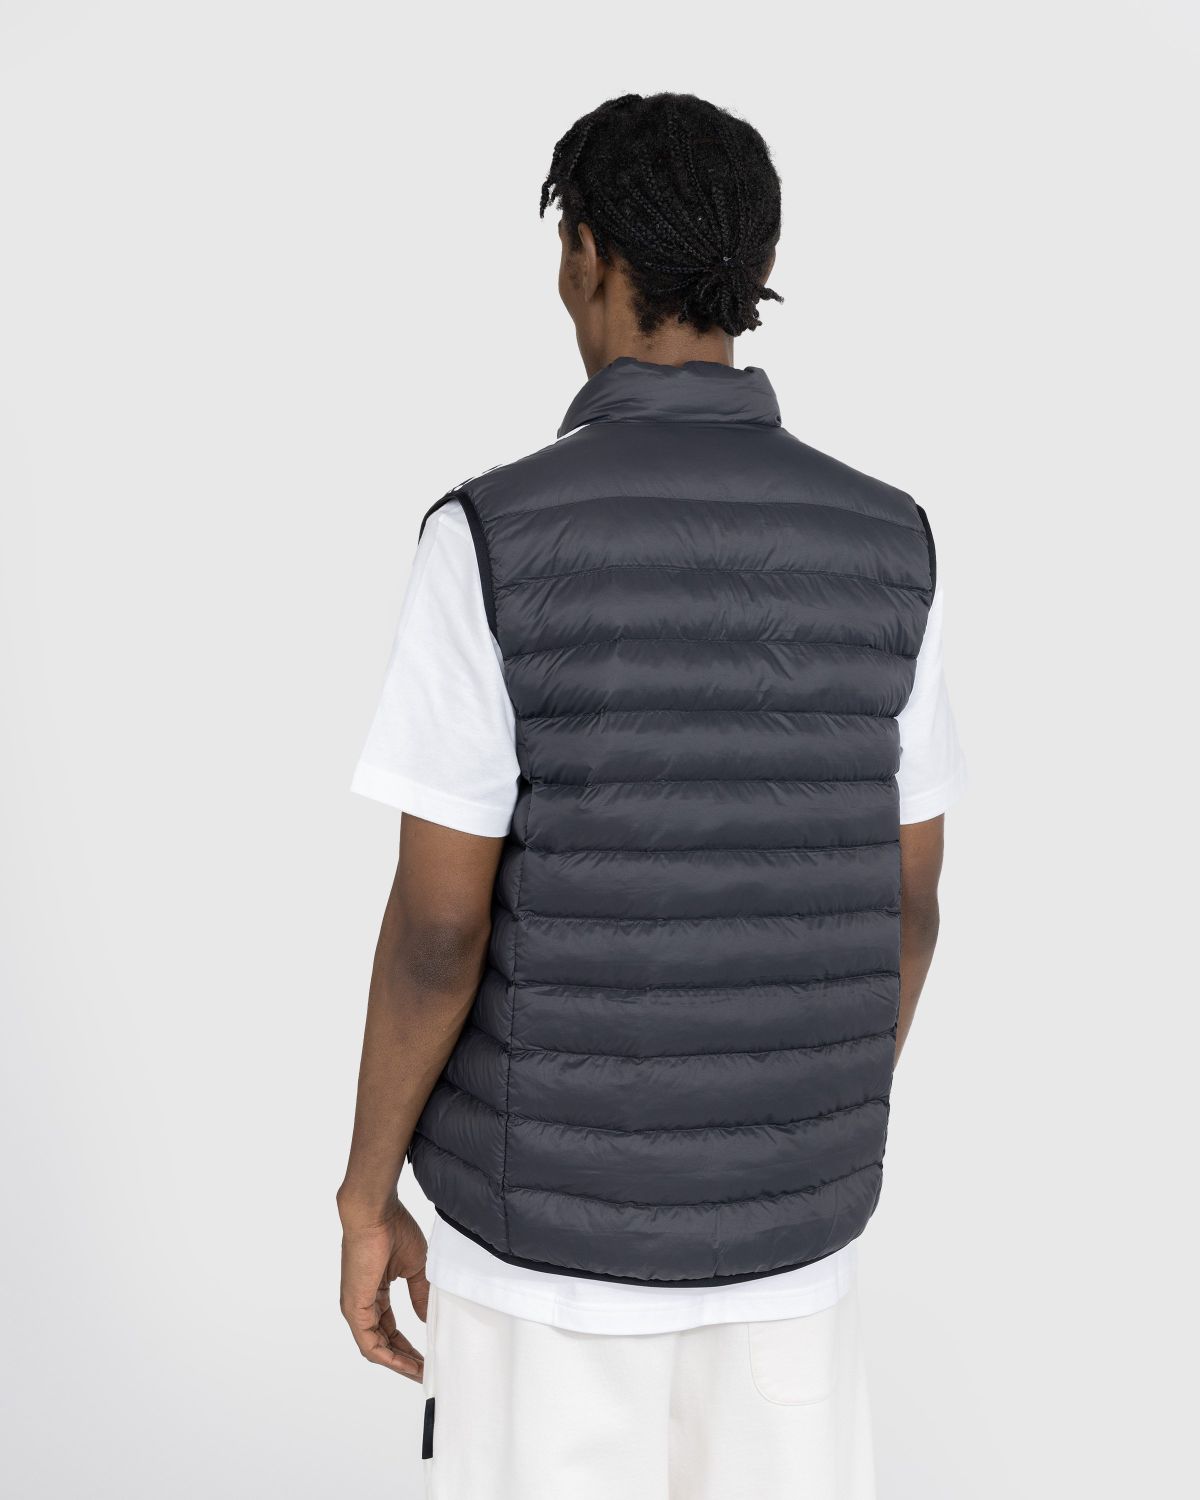 Adidas – Padded Shop | Vest Black/White Highsnobiety